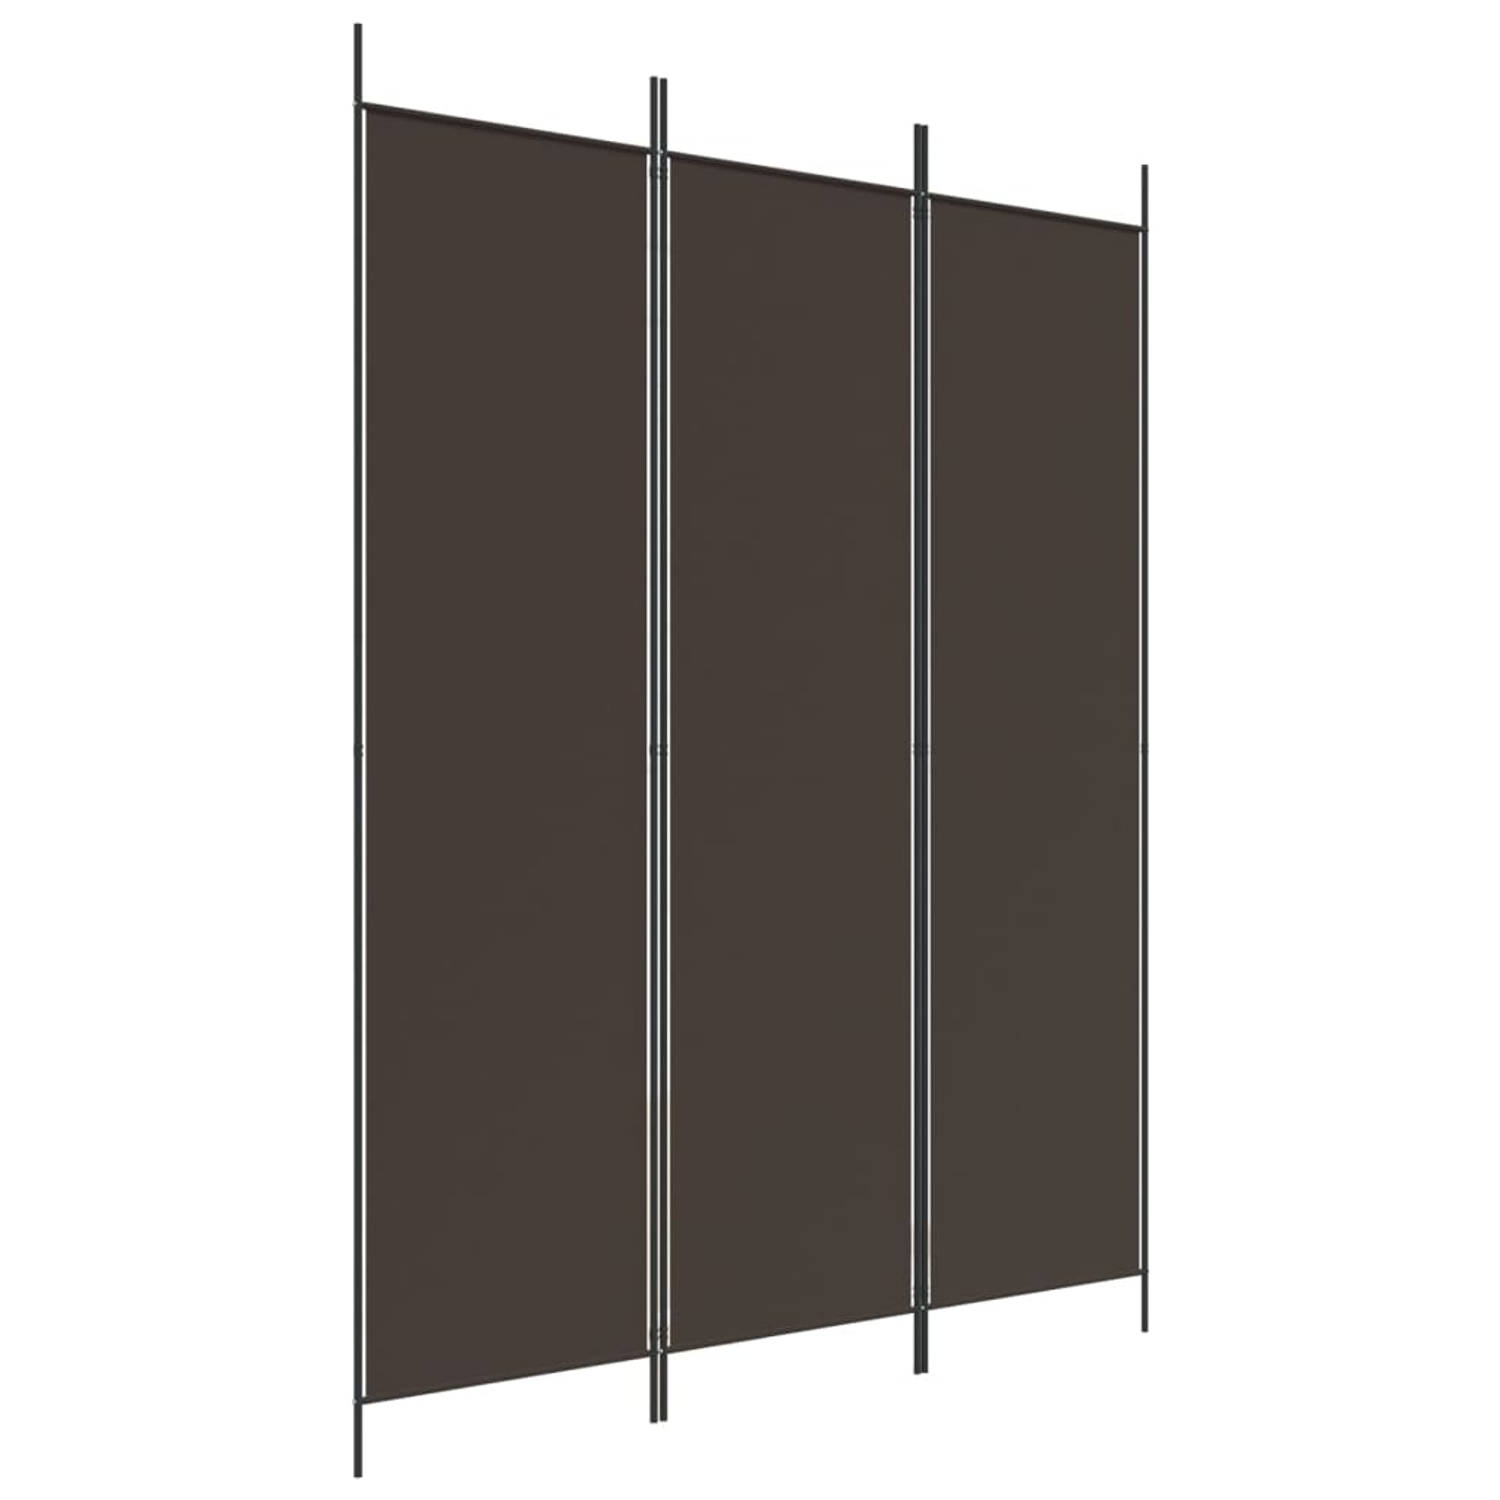 The Living Store Kamerscherm Bruin 3 Panelen - 150 x 200 cm - Duurzaam - Inklapbaar - Montagehandleiding - 100% polyester en ijzer